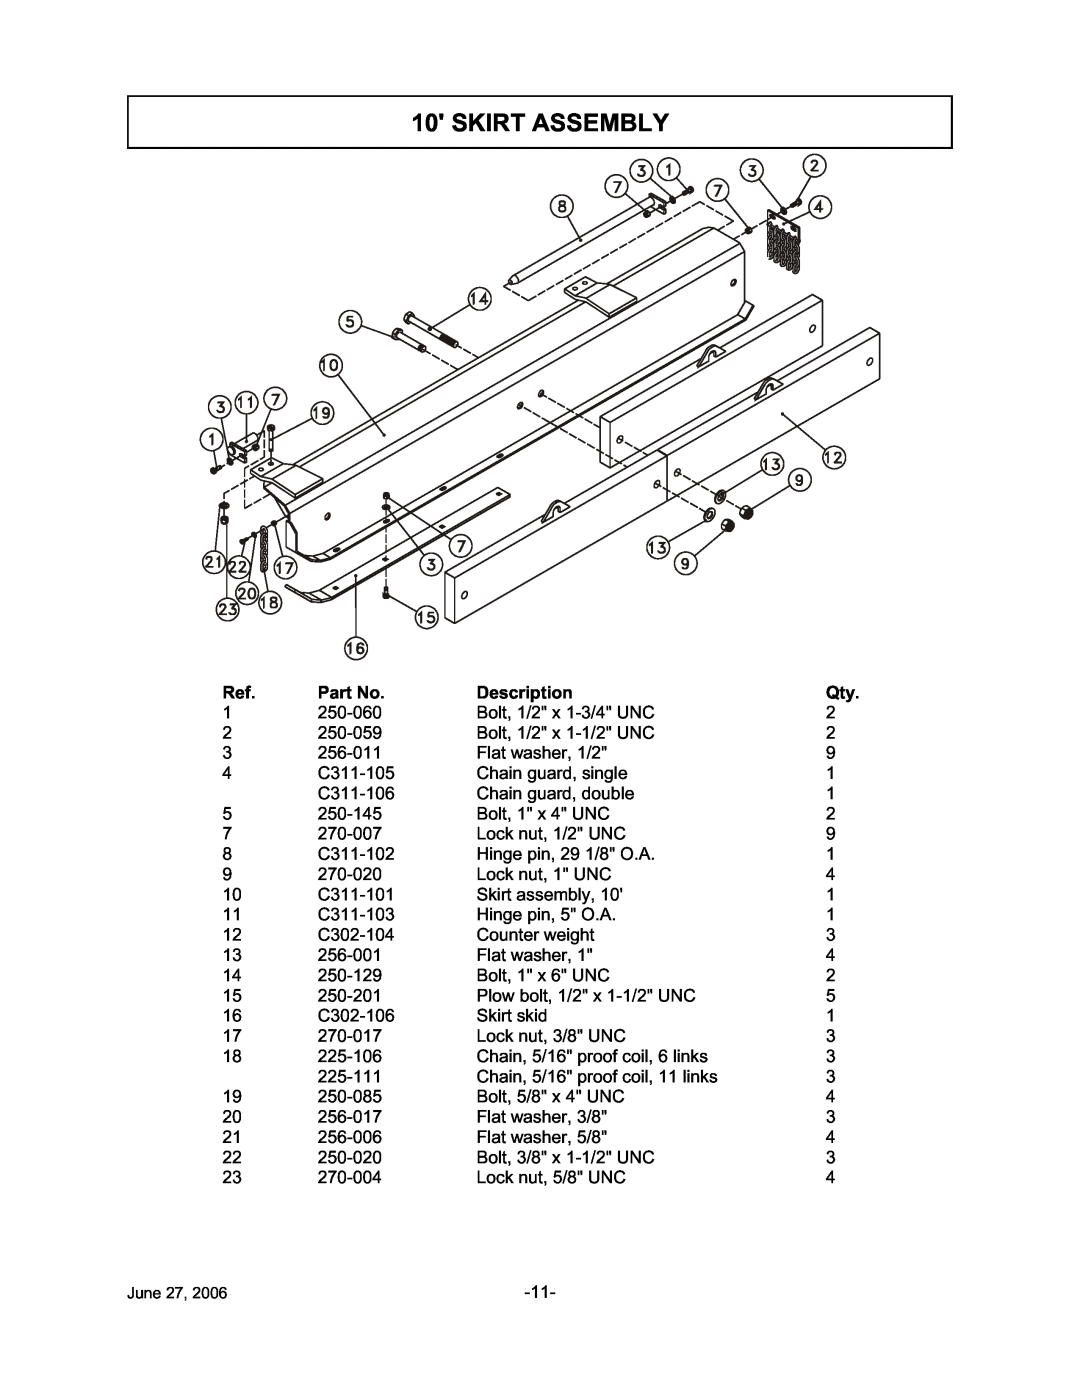 Tiger TWR-120, TWR-180 manual Skirt Assembly, Description 